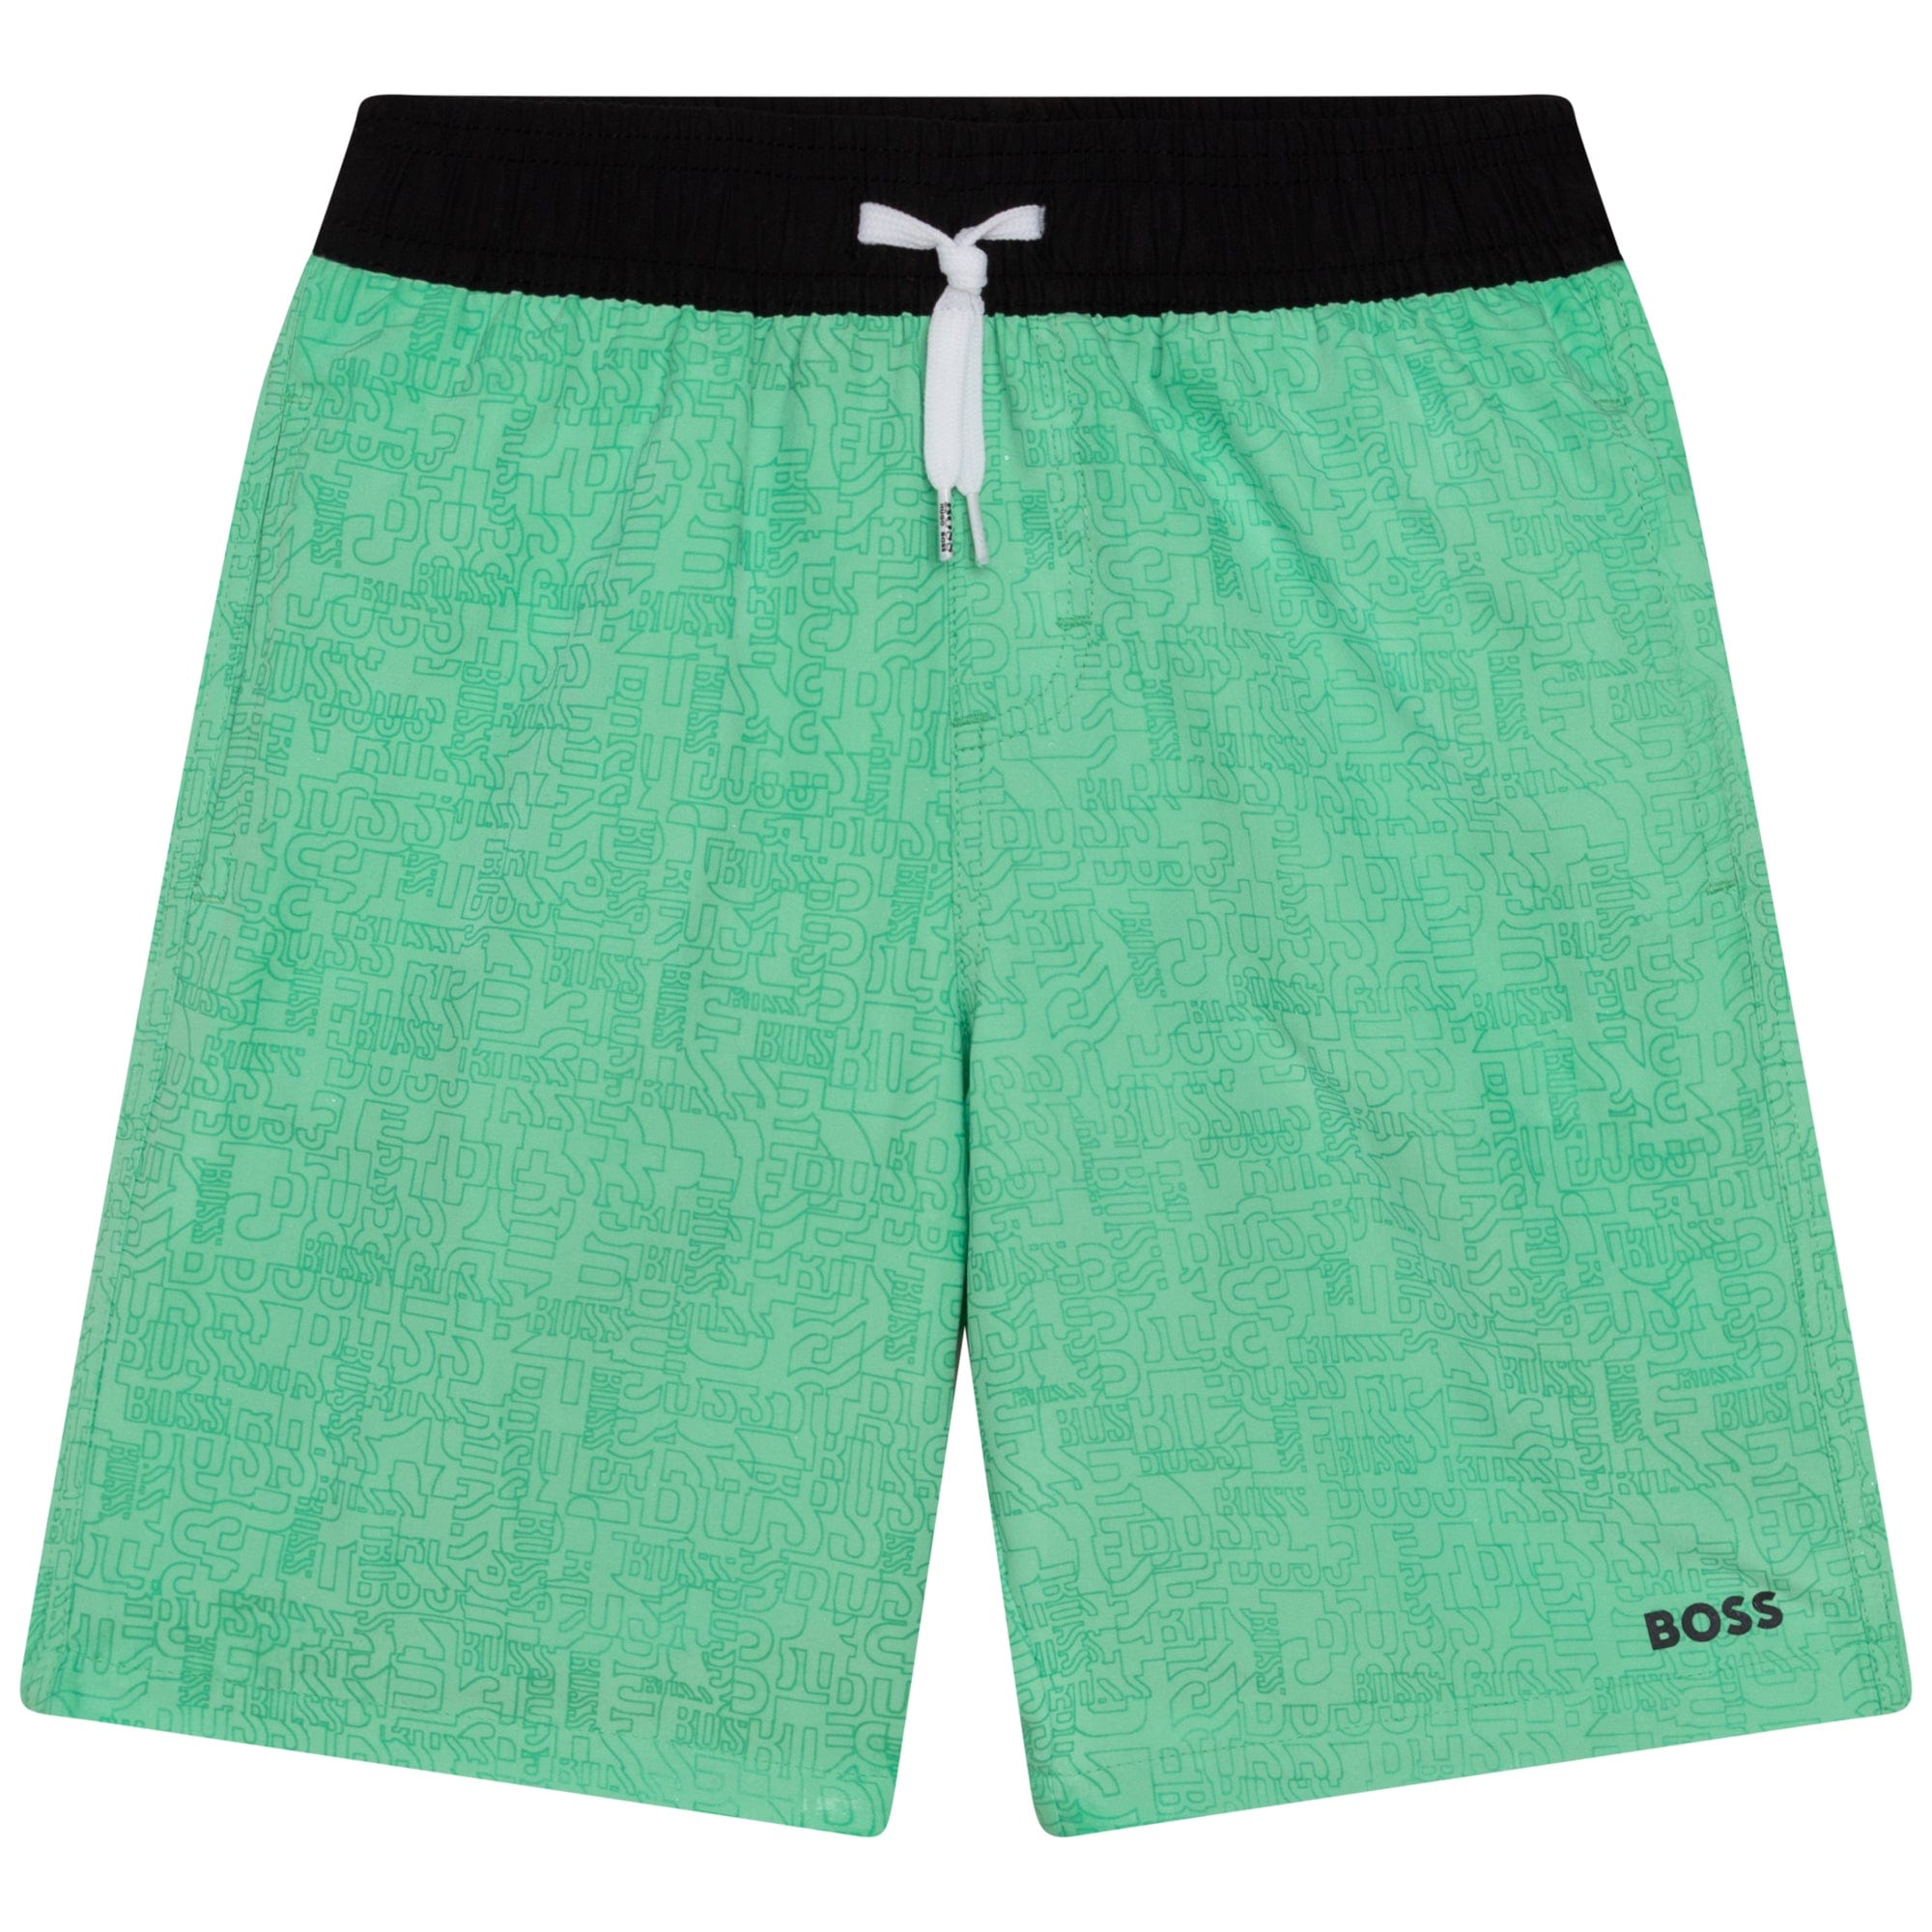 HUGO BOSS - Swim Short Colour Change - Green